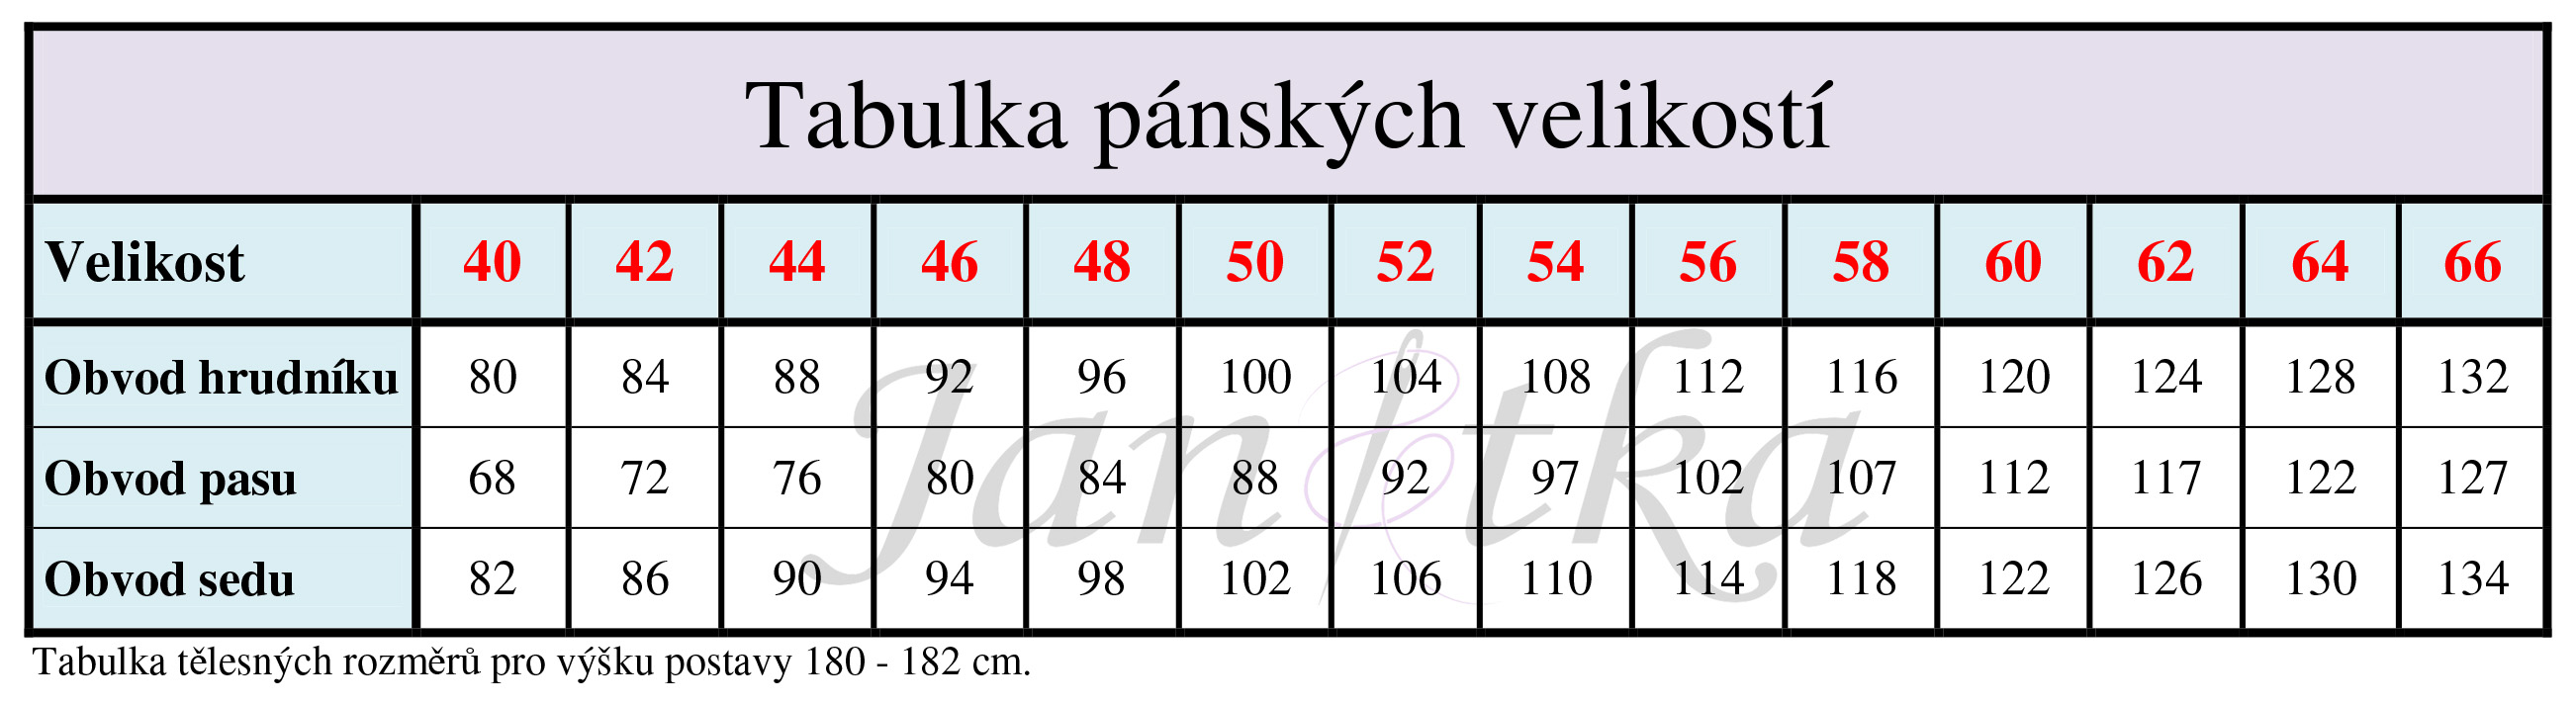 Tabulka pánských velikostí_40-66_pro WEB